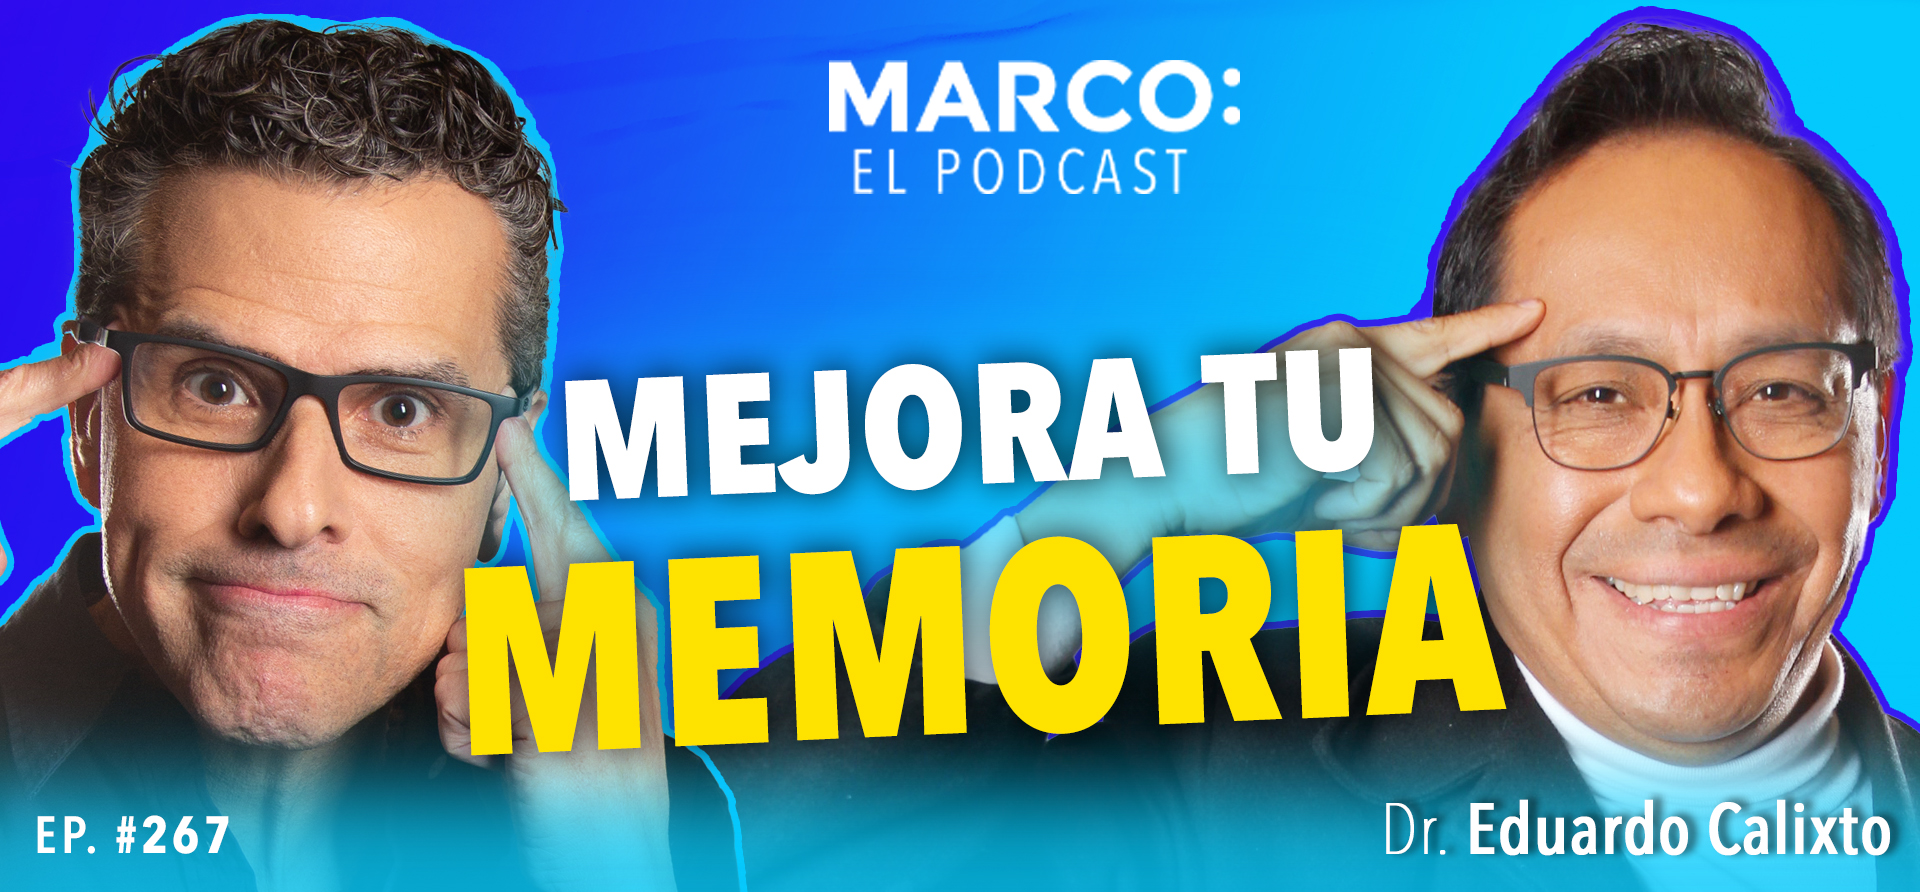 Marco El Podcast Memoria y concentración